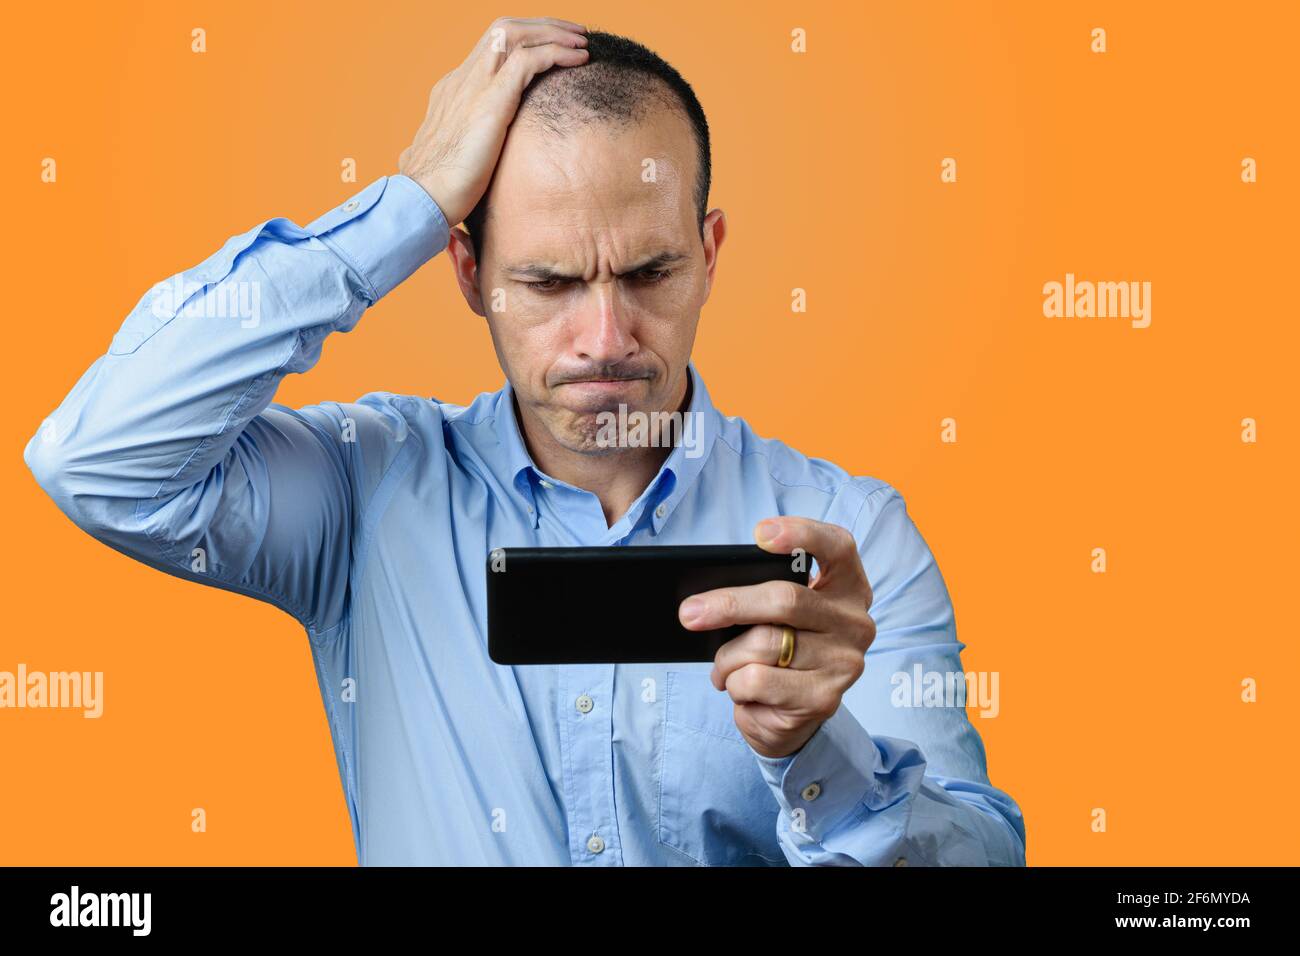 Uomo maturo in abbigliamento formale, guardando il suo smartphone, deluso e con la mano destra sulla testa. Sfondo arancione. Foto Stock